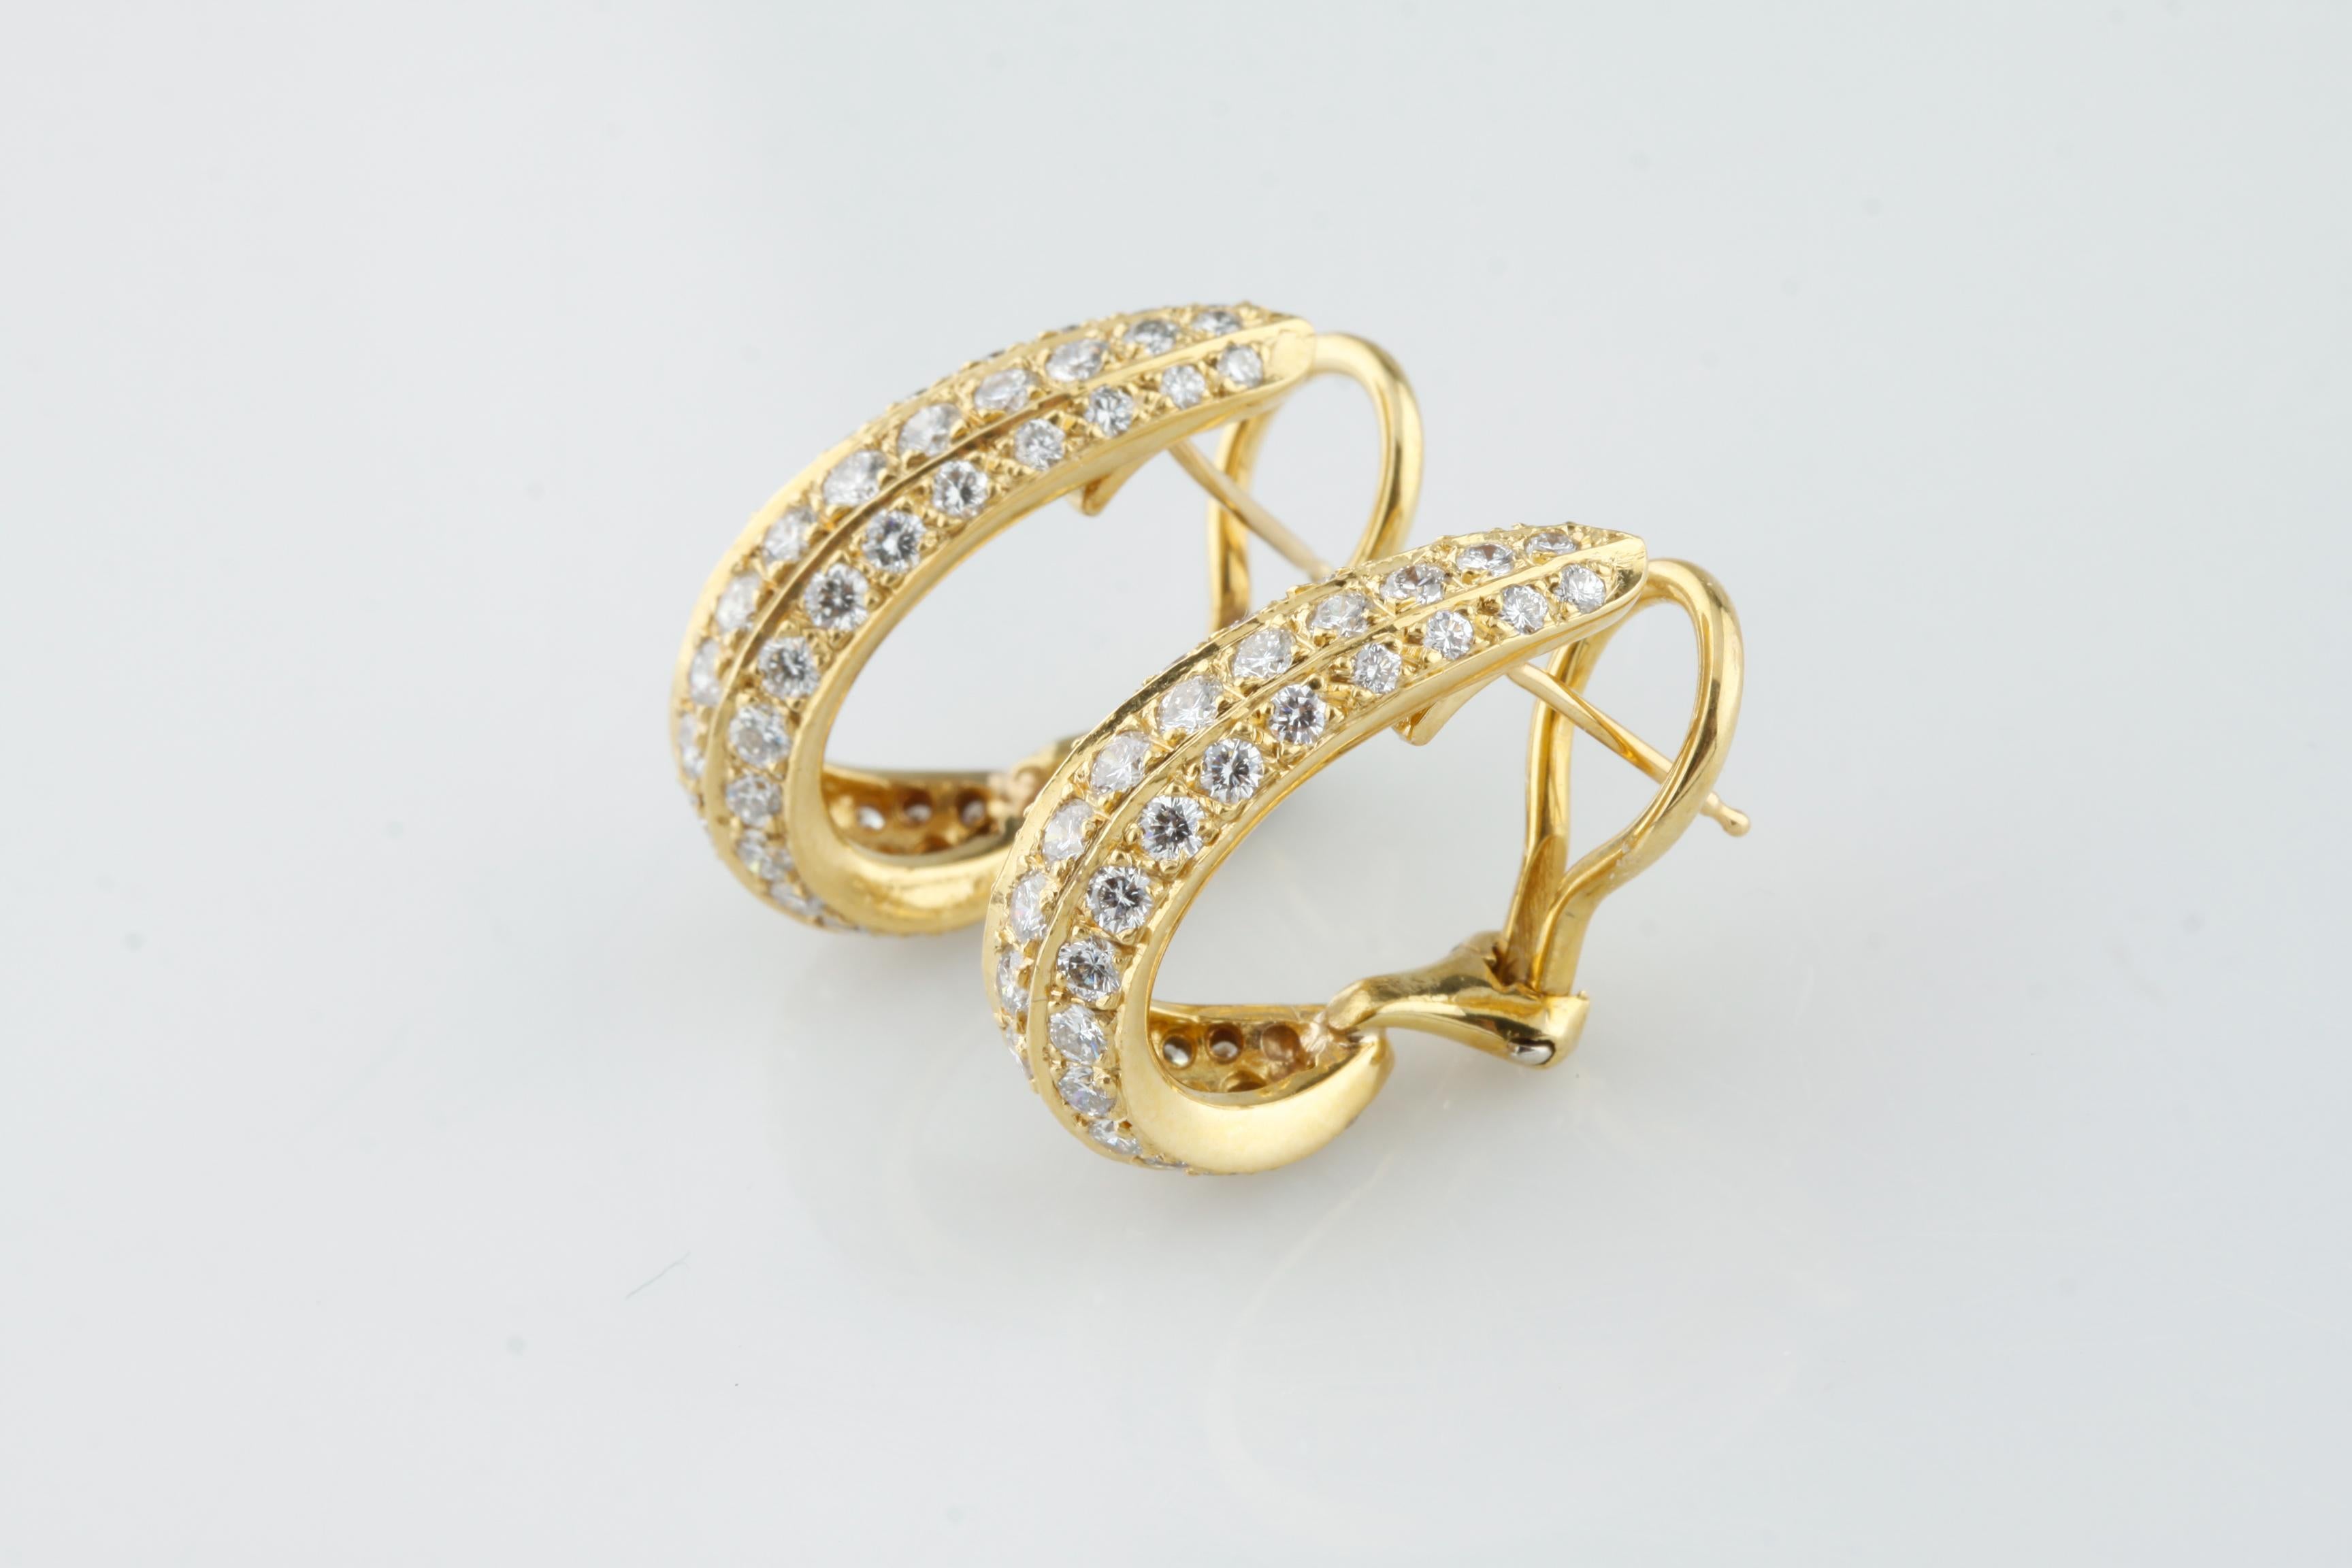 Wunderschöne, einzigartige goldene Huggie Hoop-Ohrringe
Drei Reihen mit runden, gepflasterten Diamanten
Gesamtzahl der Diamanten = 96
Gesamtkaratgewicht der Diamanten = ca. 2,75 Karat
Durchschnittliche Farbe = F - G
Durchschnittliche Klarheit =